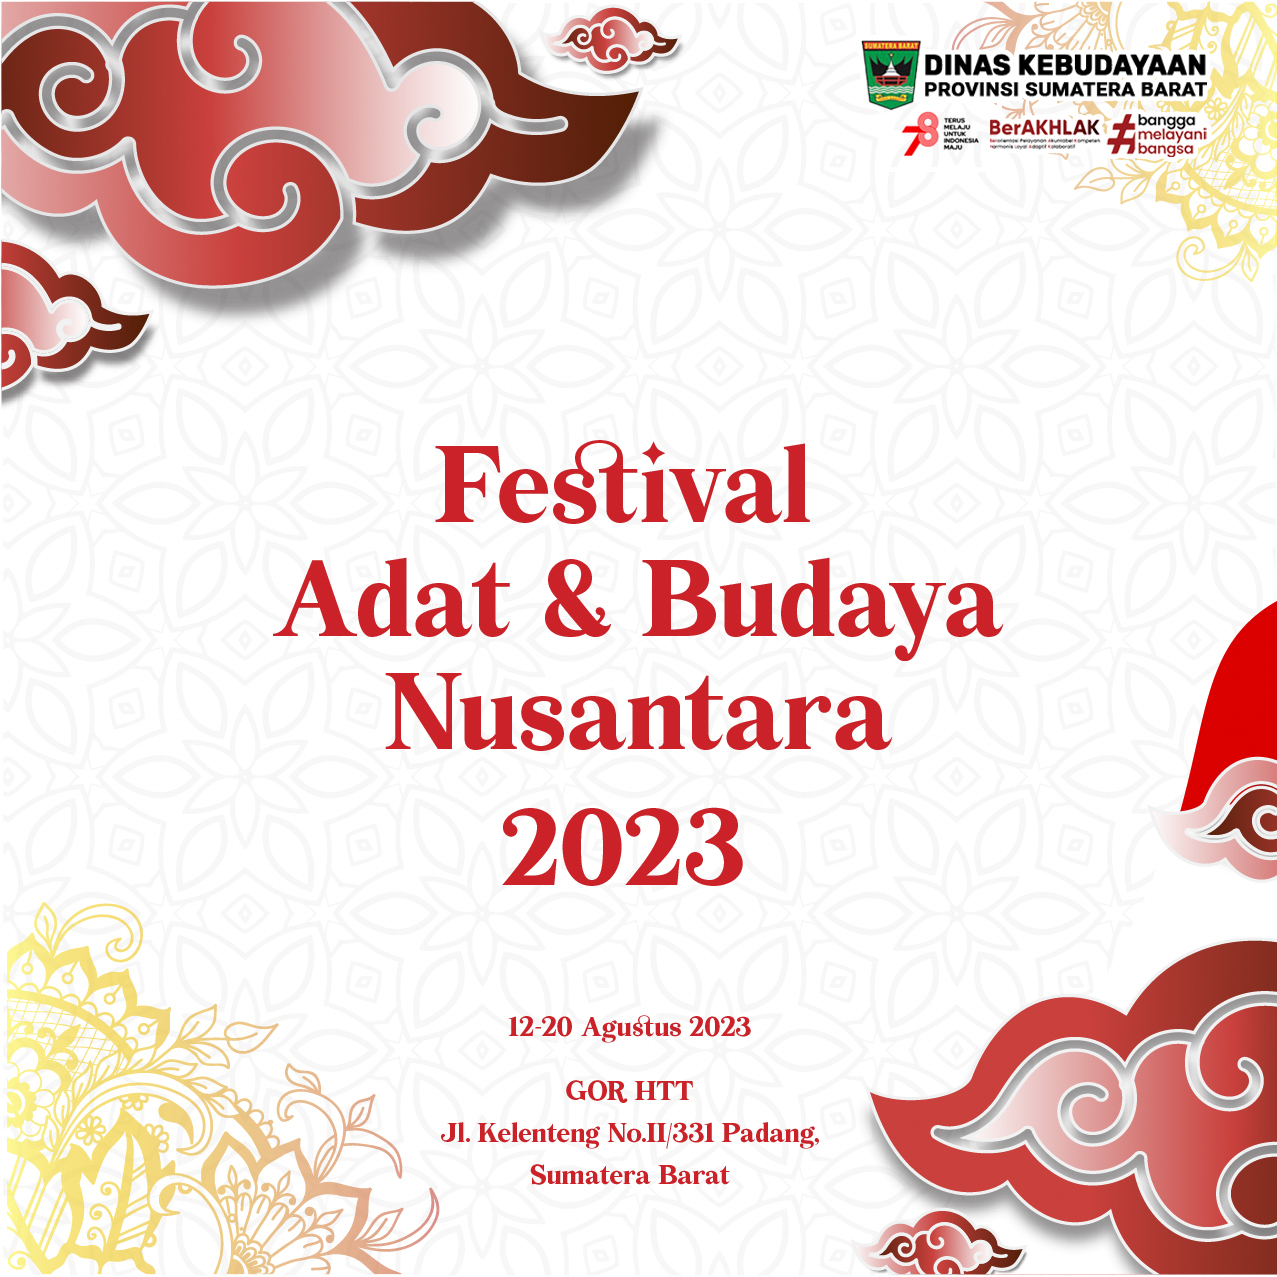 FESTIVAL ADAT DAN BUDAYA NUSANTARA 2023